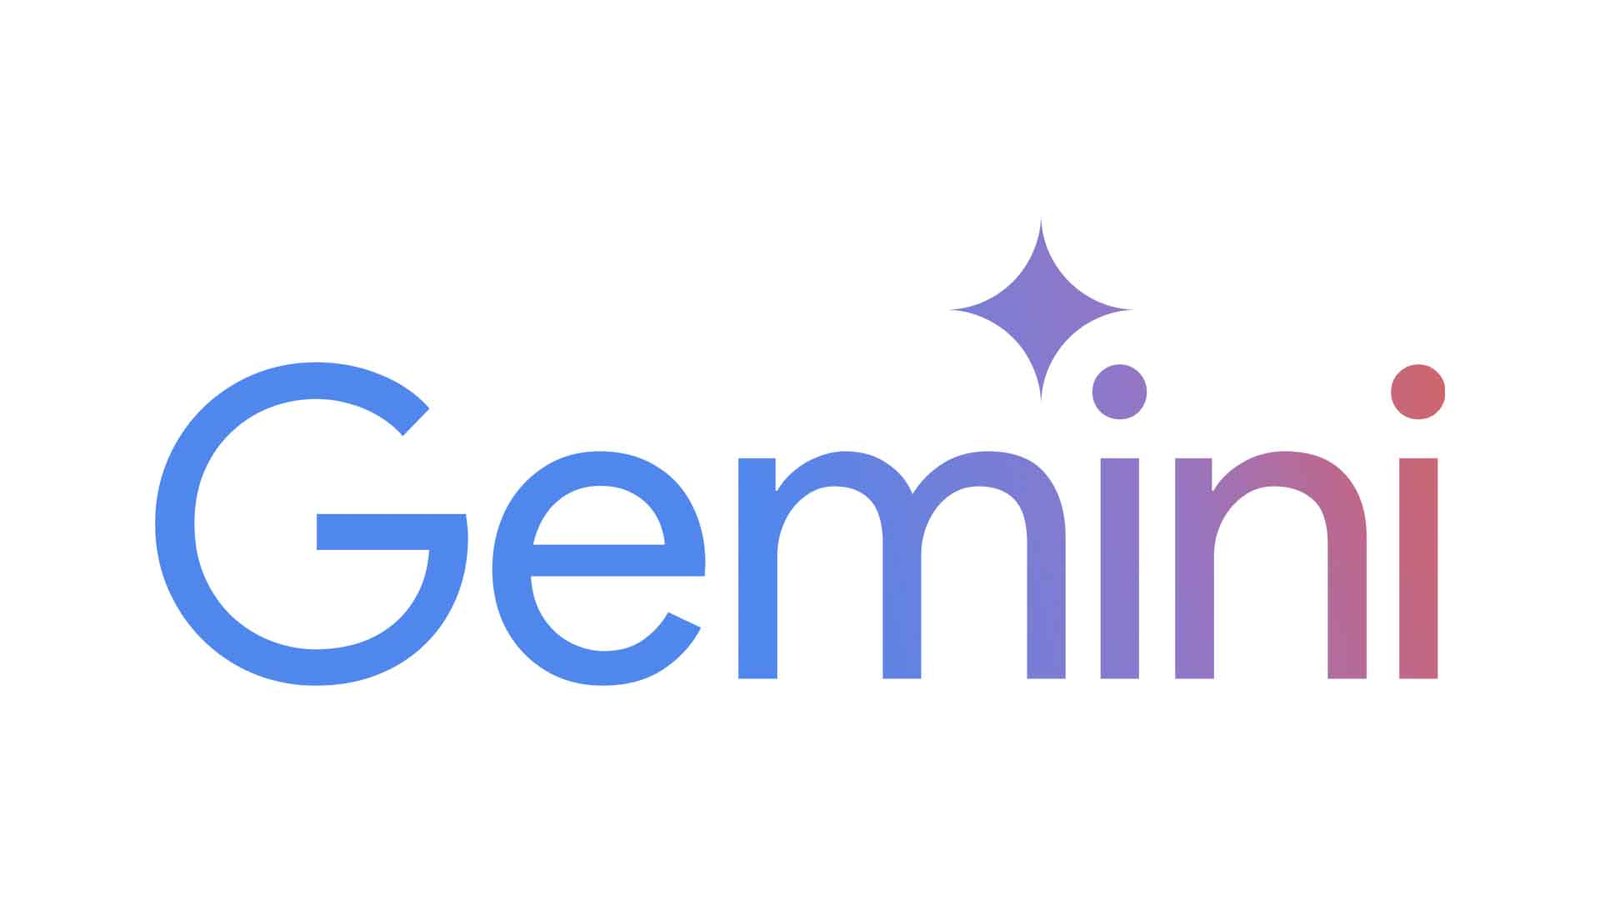 Google'un Yeni Yapay Zeka Modeli Gemini Advanced Artık Kullanımda